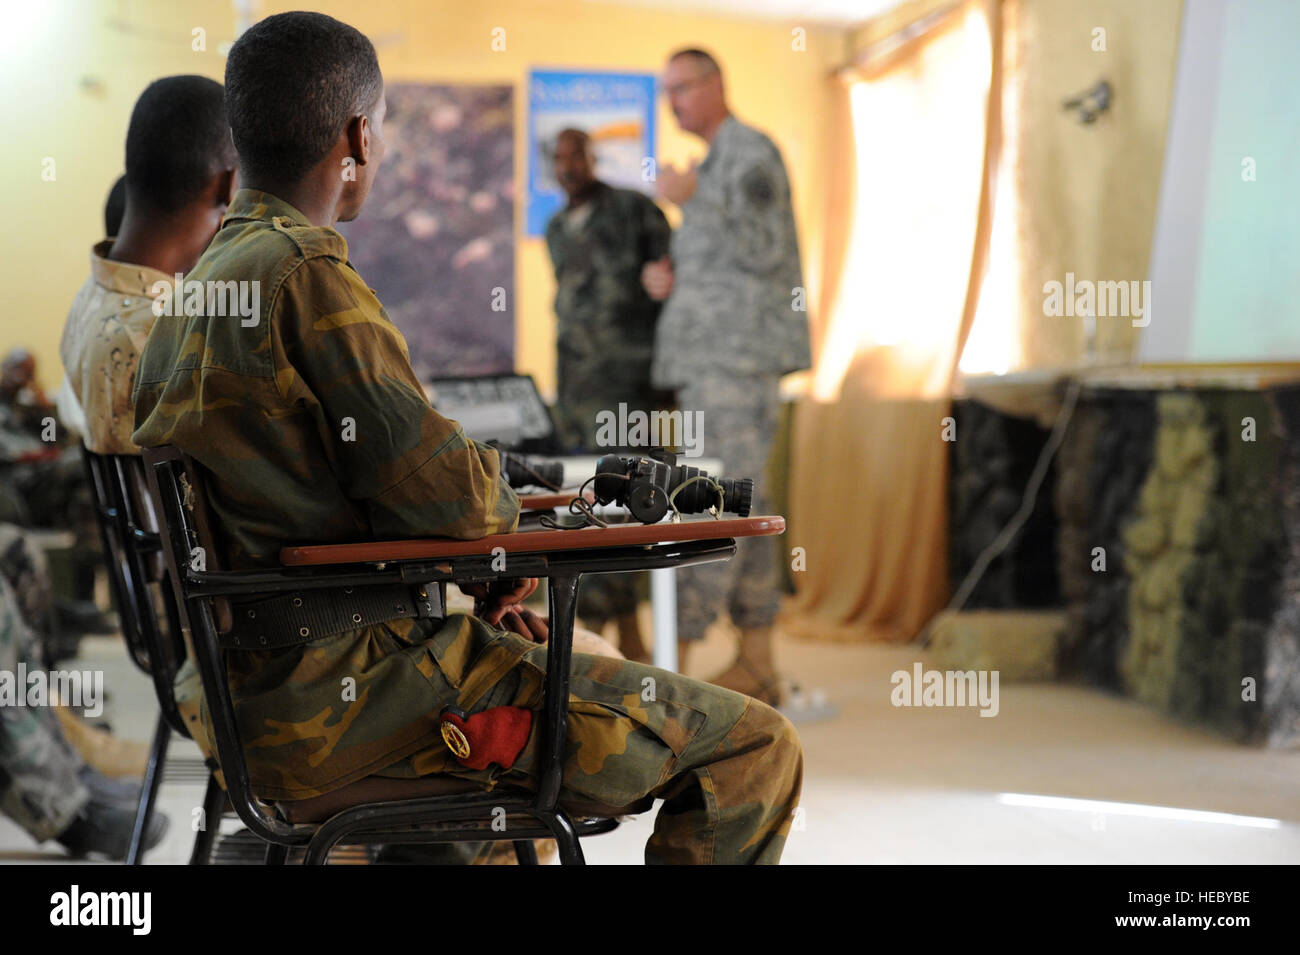 Les soldats de l'armée djiboutienne écouter lors d'une classe de vision nocturne à Arta (Djibouti), le 23 mars 2012. L'ARMÉE AMÉRICAINE 3e Escadron, 124e régiment de cavalerie, déployées à l'appui de la Force opérationnelle interarmées - Corne de l'Afrique (CJTF-HOA), contribue à former les soldats de l'armée djiboutienne pour un prochain déploiement en Somalie. Banque D'Images